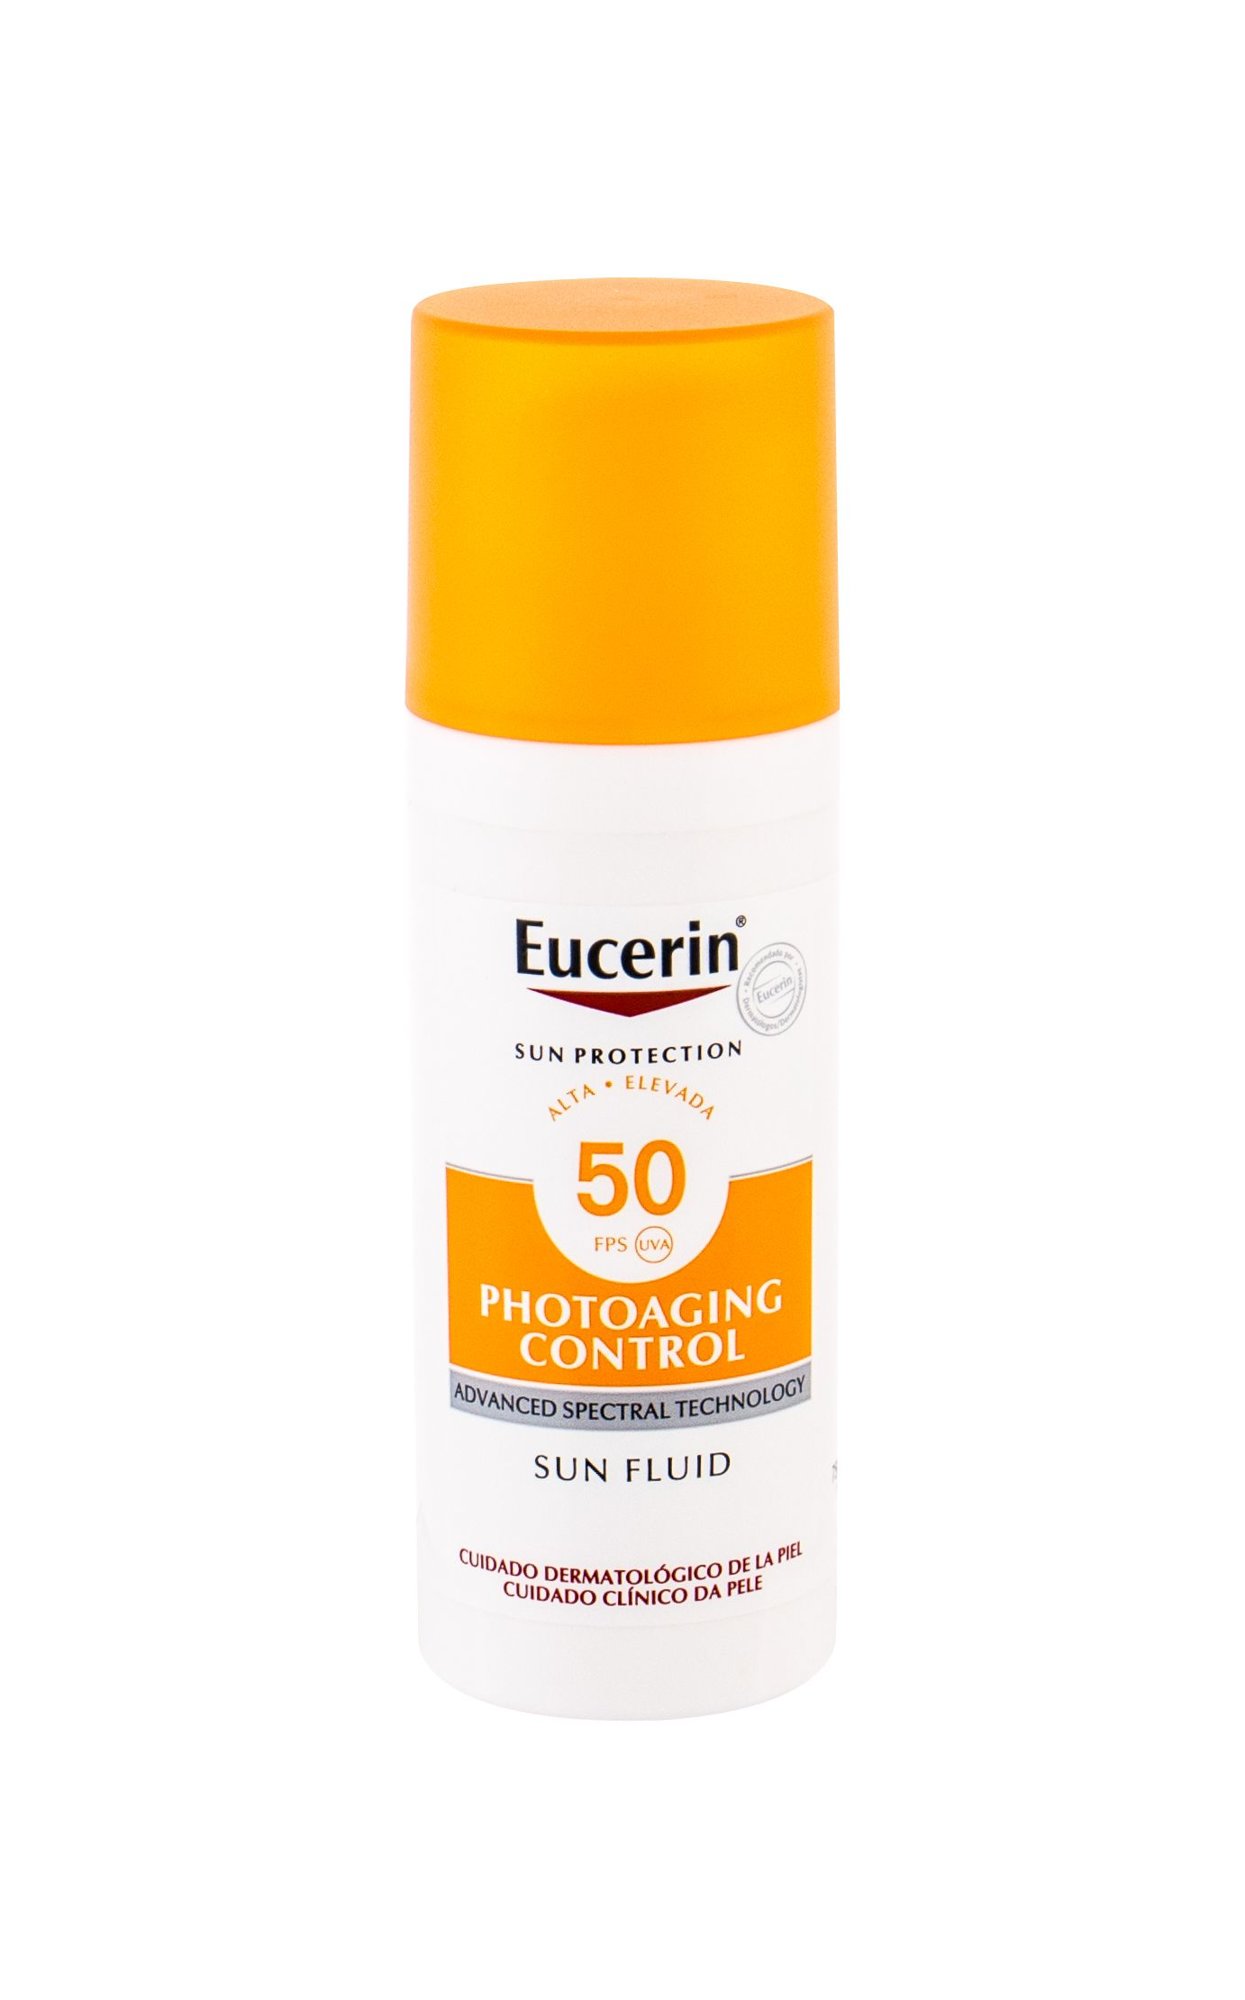 Eucerin Sun Photoaging Control Sun Fluid veido apsauga